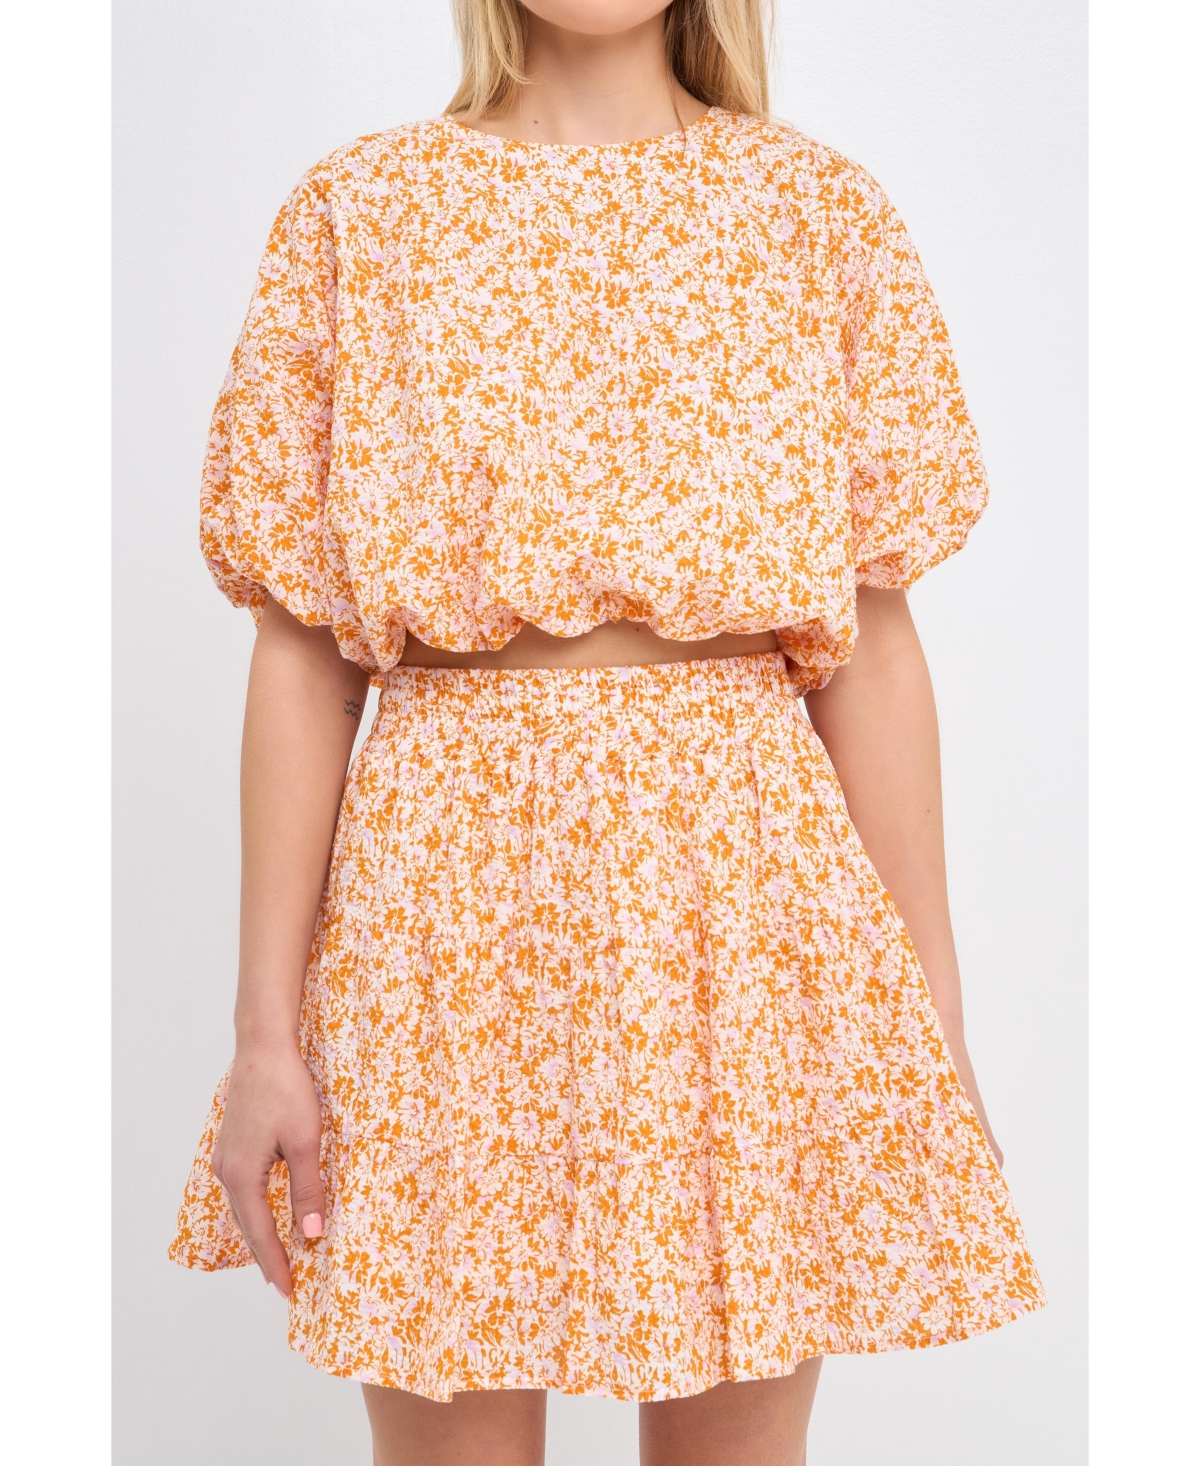 Women's Crinkled Floral Linen Blouson Top - Orange